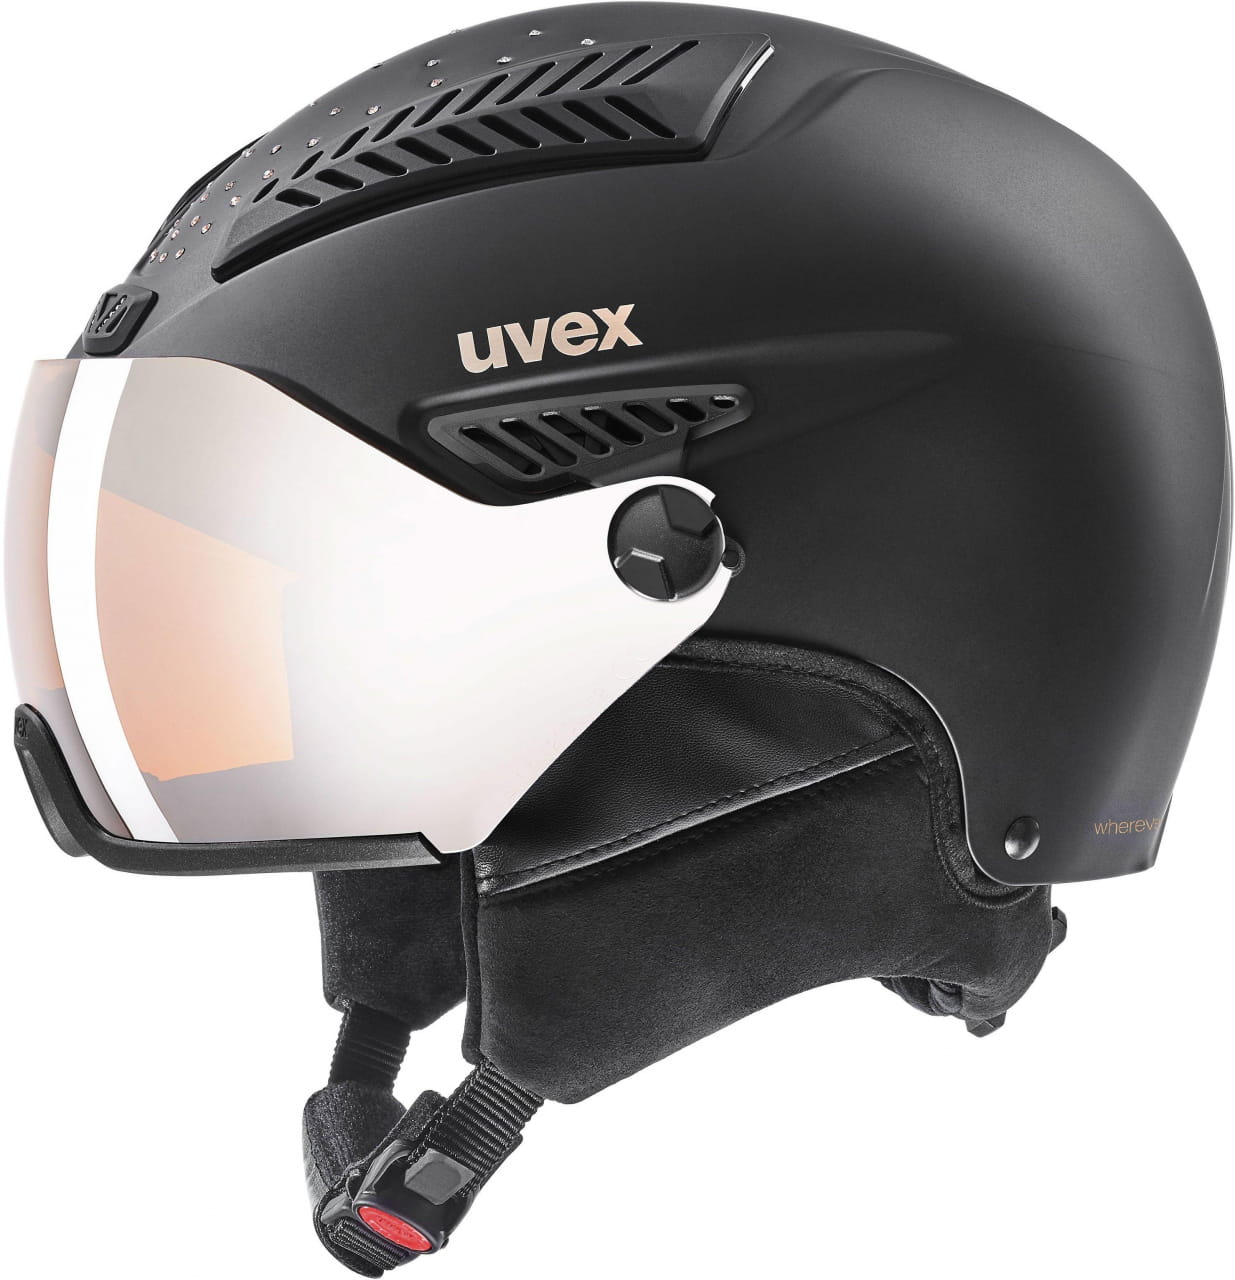 Dámská lyžařská helma Uvex Hlmt 600 Visor